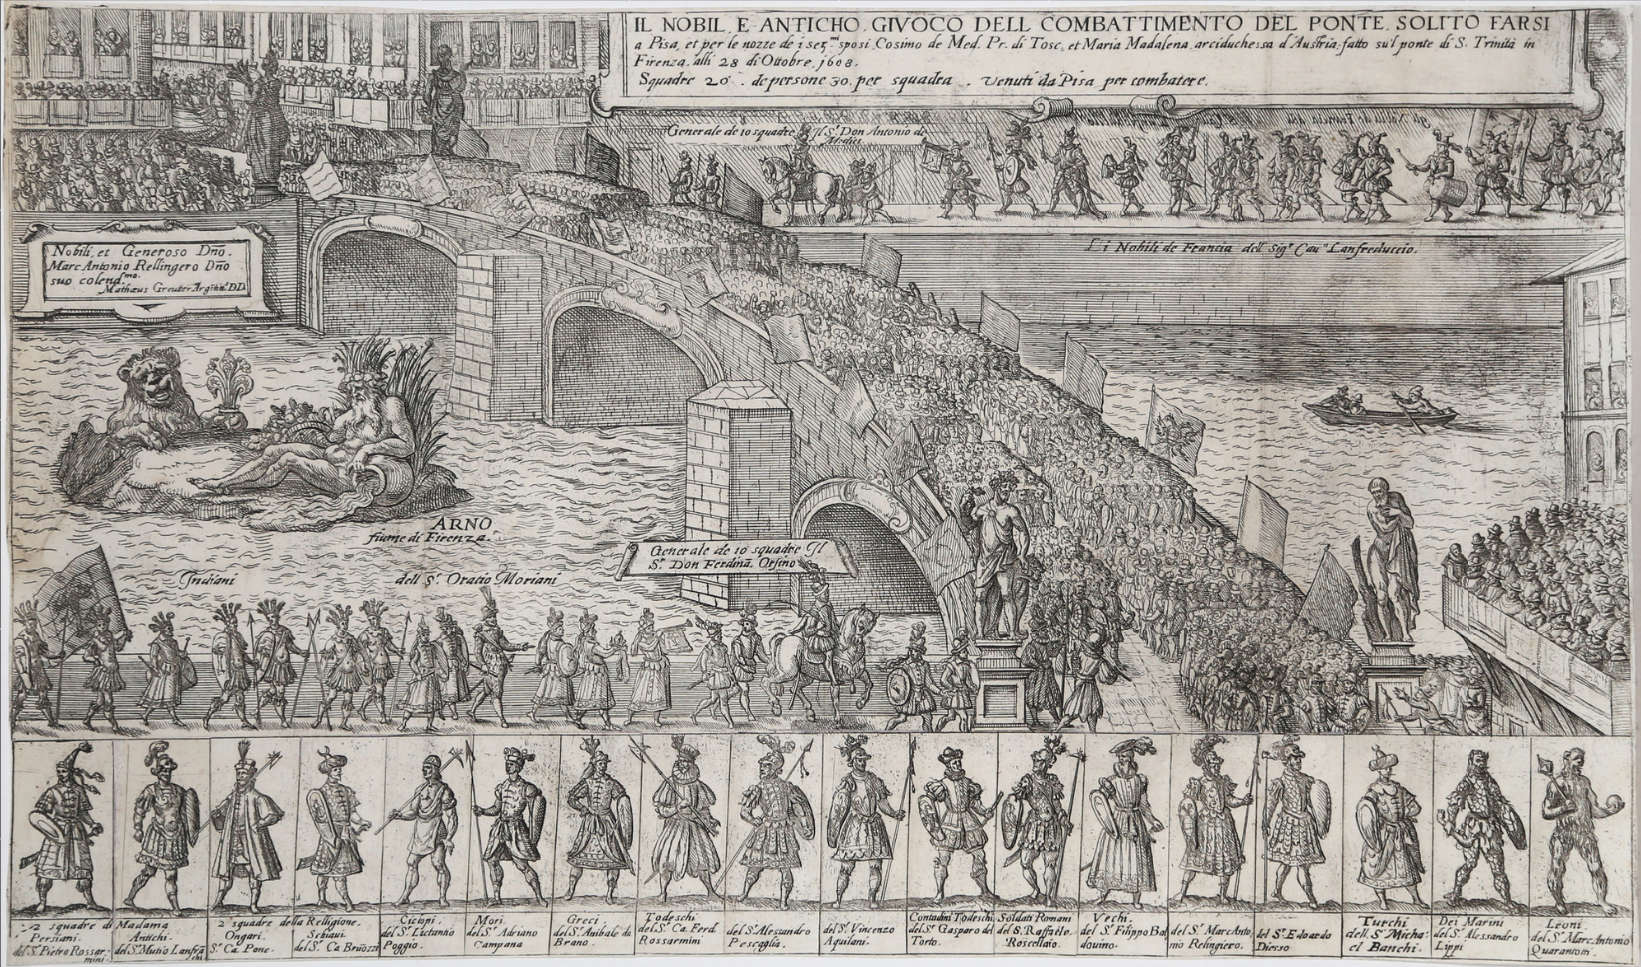 Matthäus Greuter, Il nobil e antico giuoco del combattimento del ponte solito farsi a Pisa... (1608; aguafuerte, 273 x 499 mm)